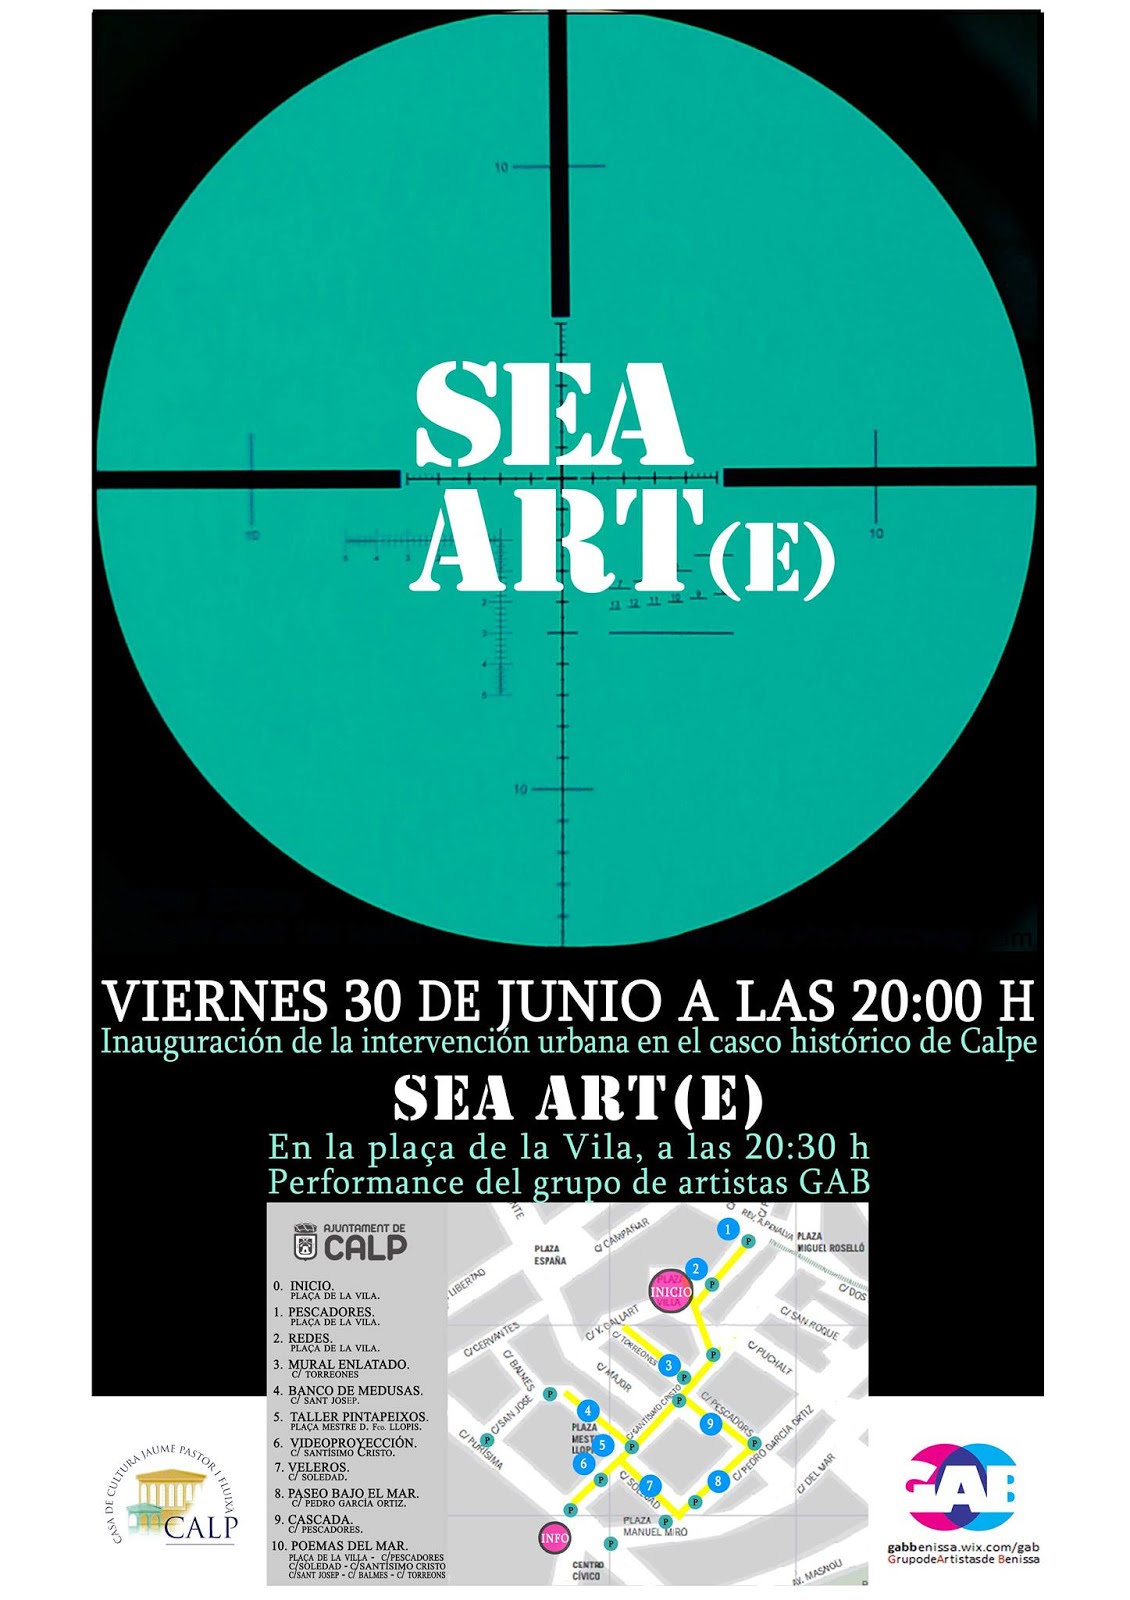 SEA ART(E)